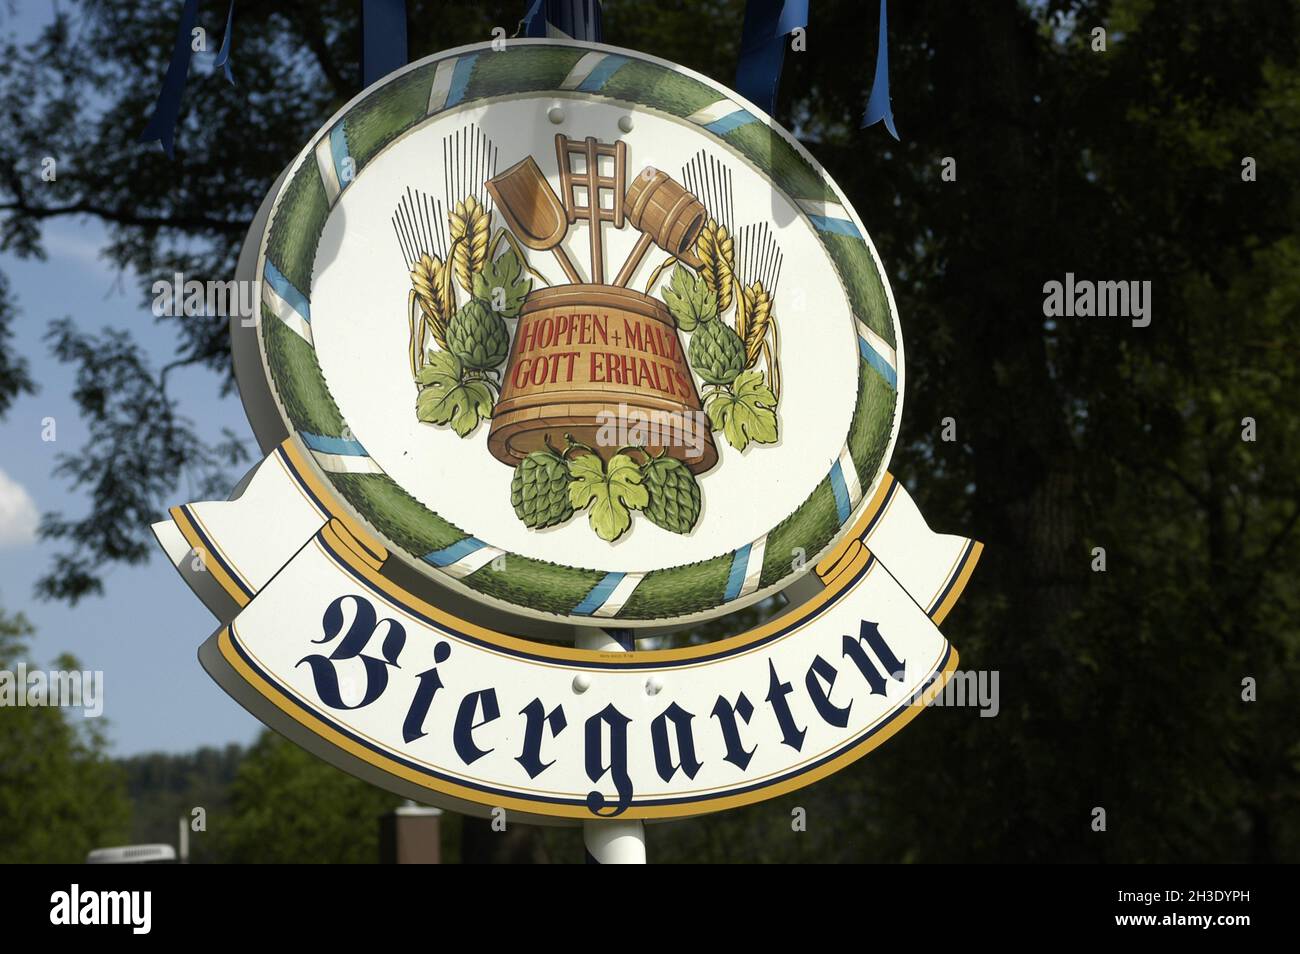 Panneau 'Biergarten, Hopfen und Malz, Gott erhalts', Allemagne, Bade-Wurtemberg,Heidenheim Banque D'Images